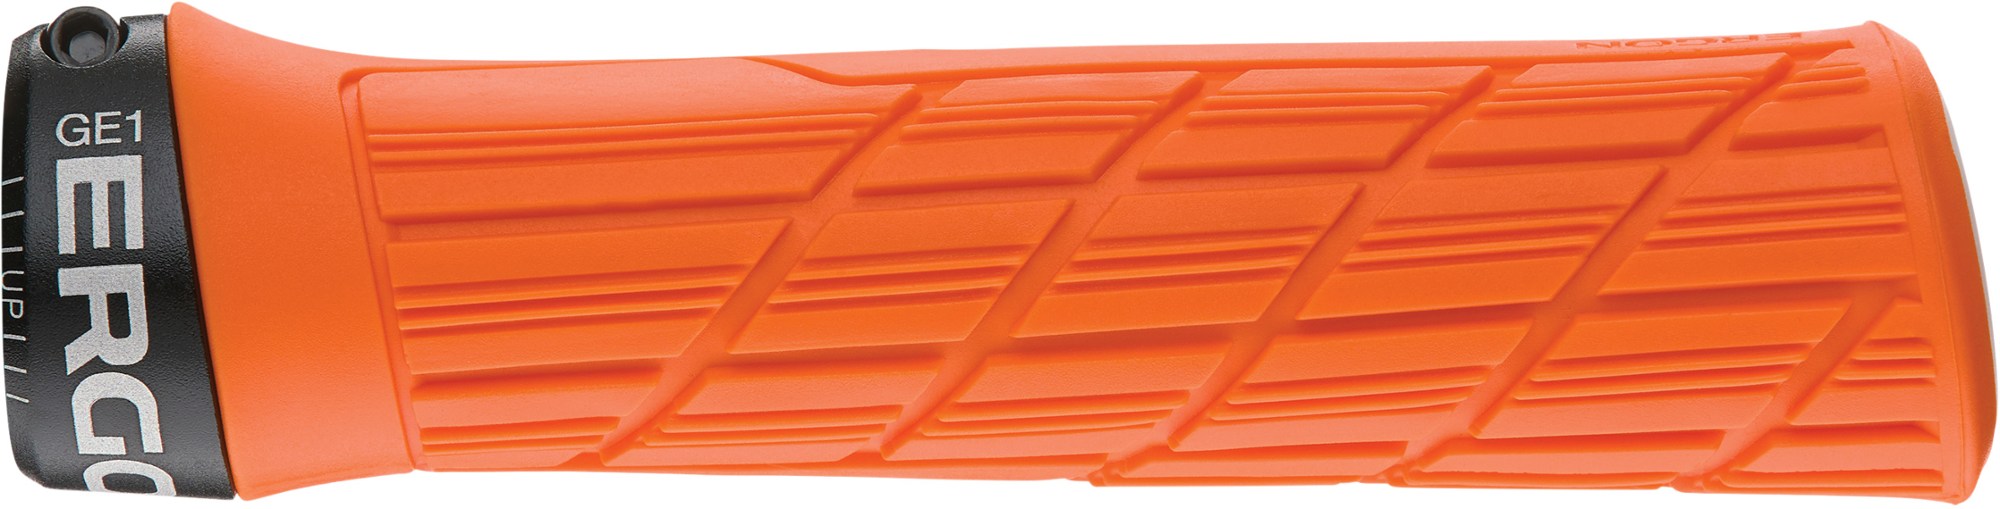 GE1 Evo Factory Slim фиксируемые ручки руля Ergon, оранжевый